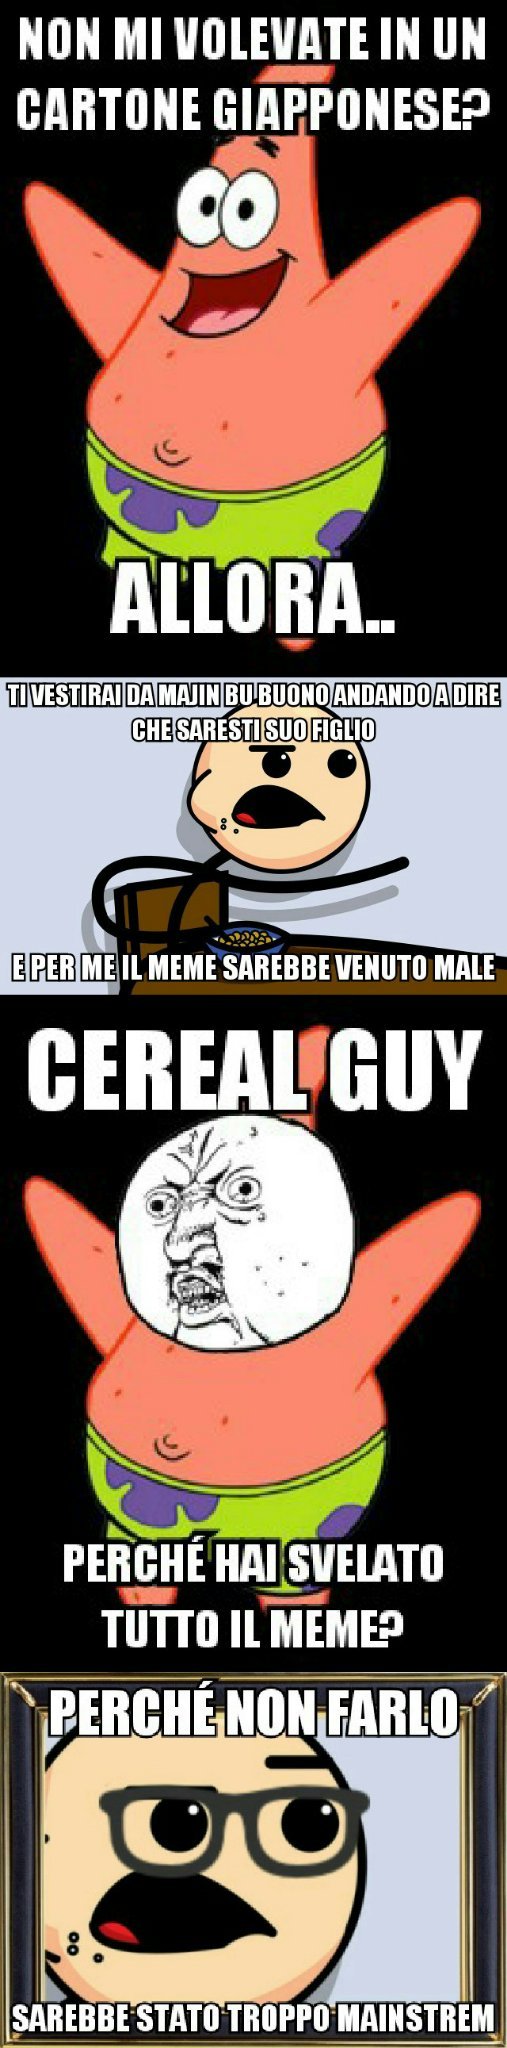 Spero vi piaccia, in questo meme cito l'Hipster Cereal Guy